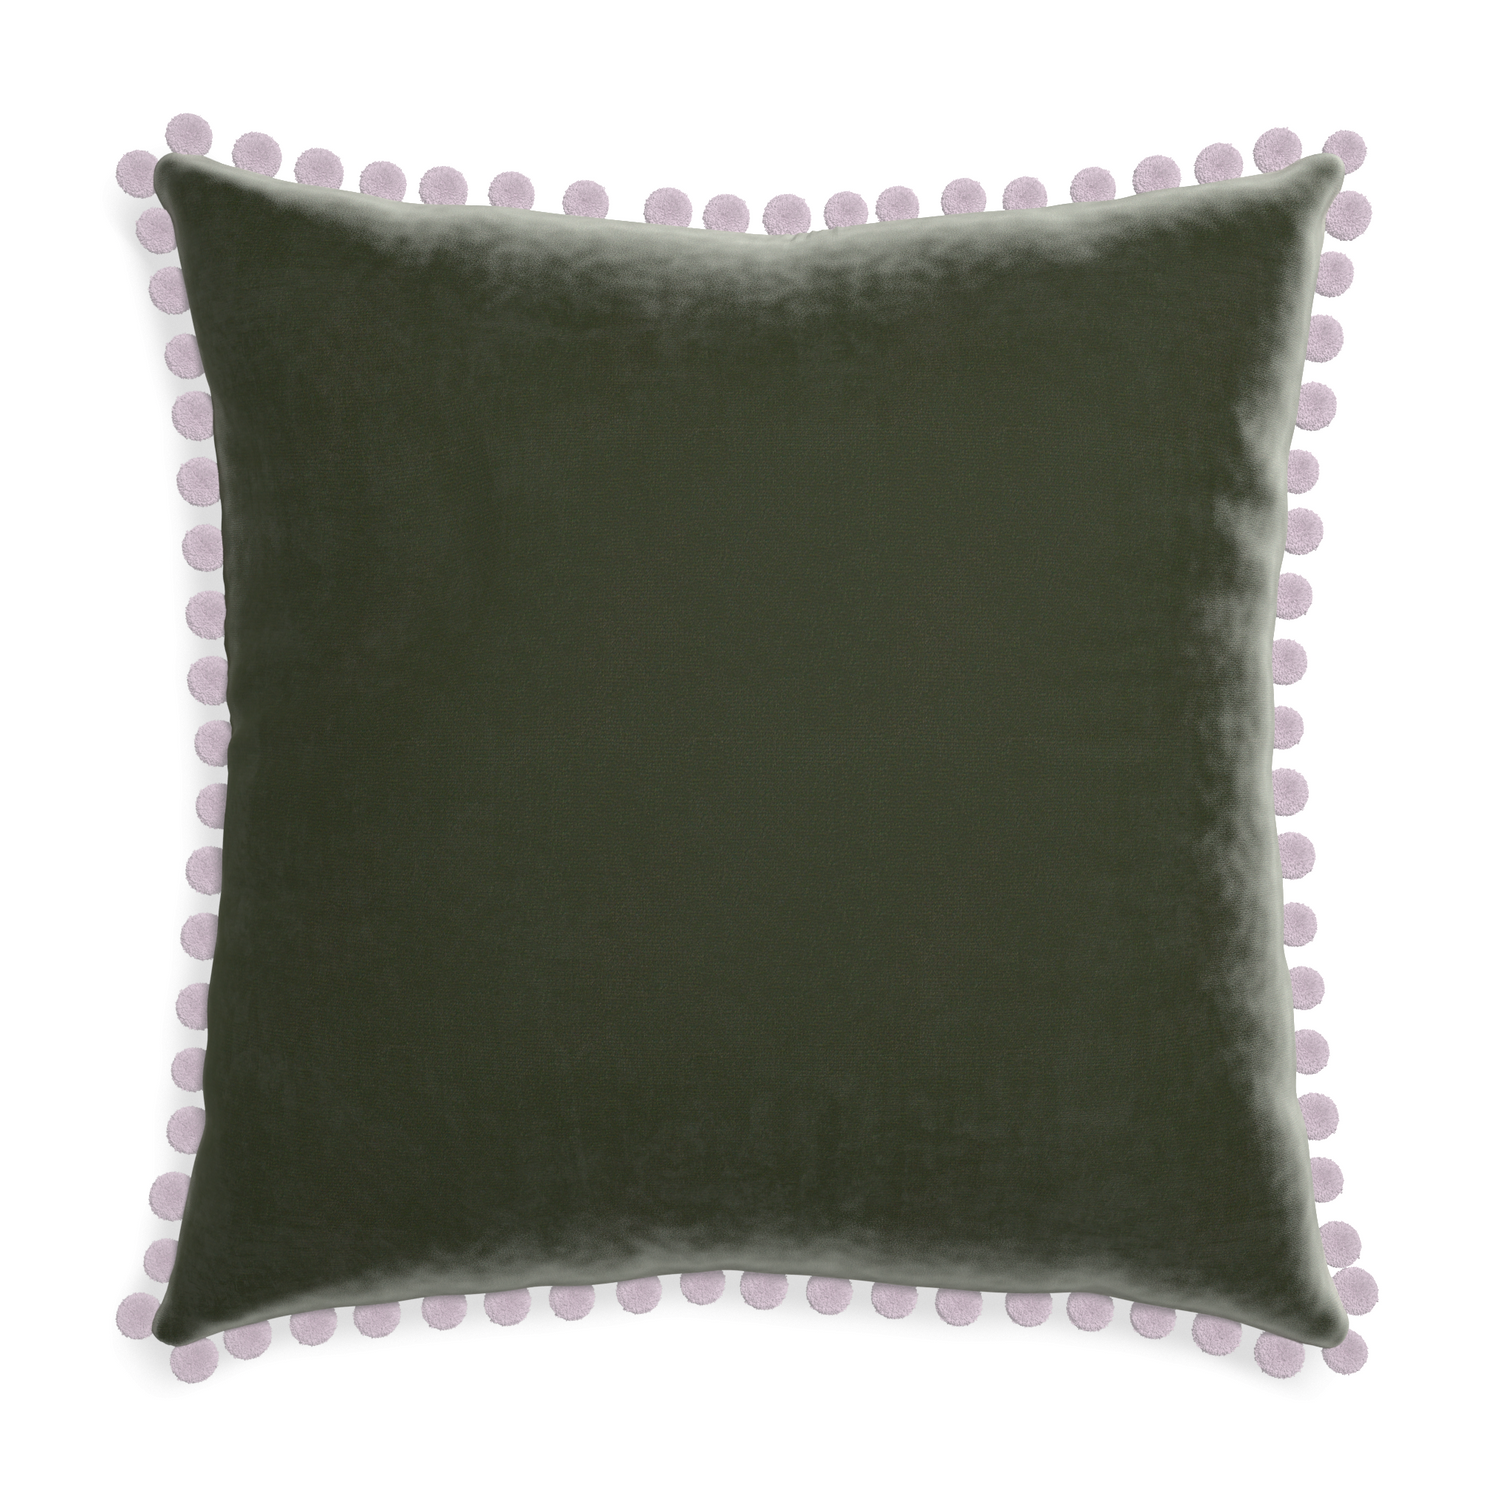 square fern green velvet pillow with lilac pom poms